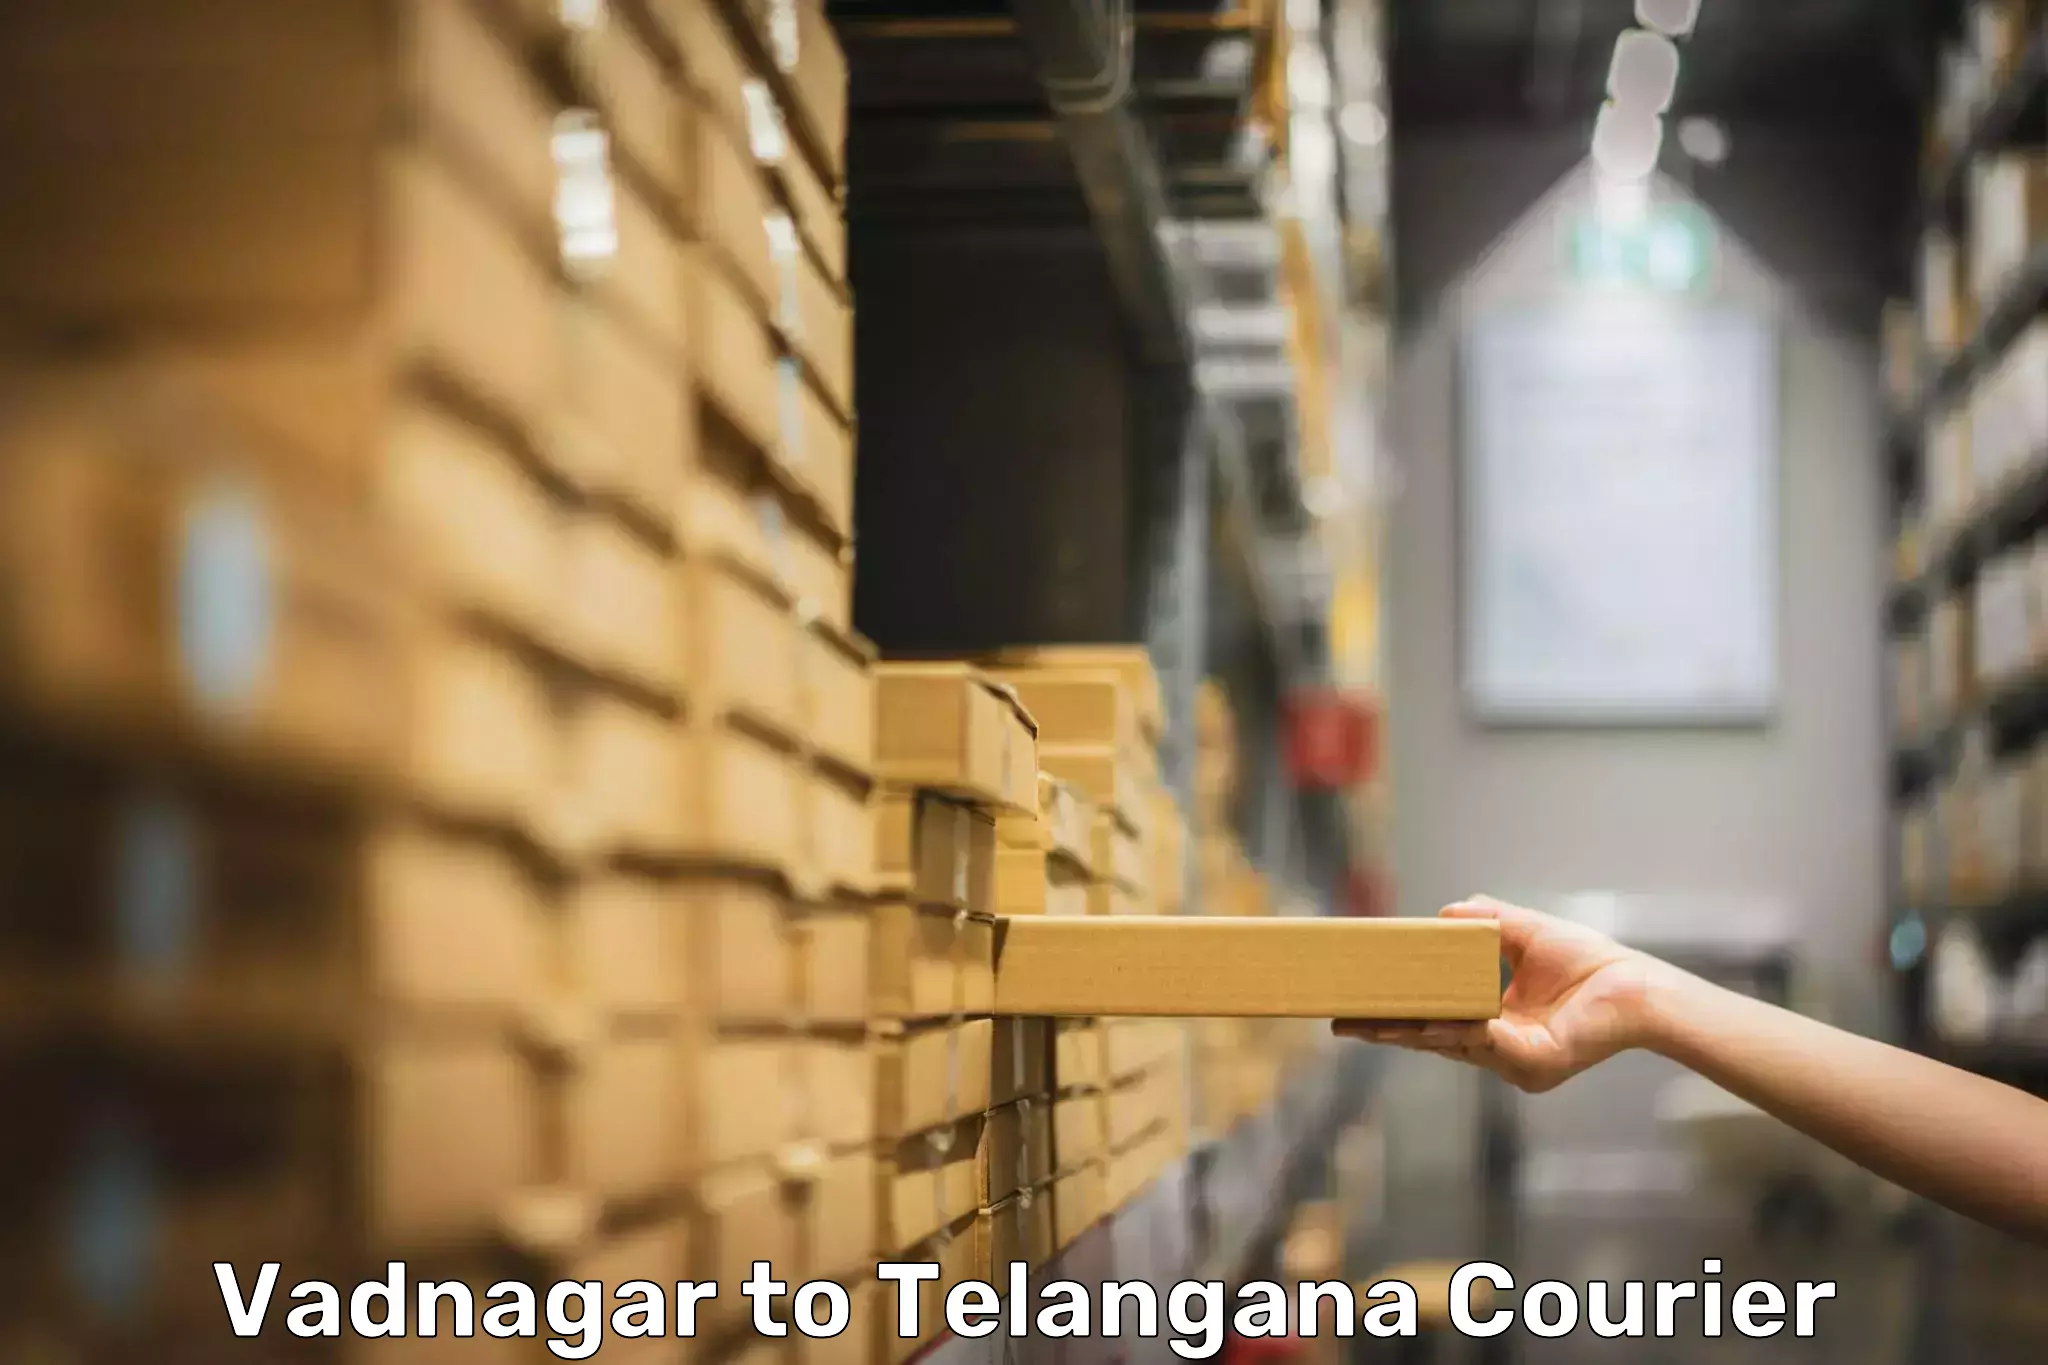 Luggage shipment tracking Vadnagar to Thungathurthi